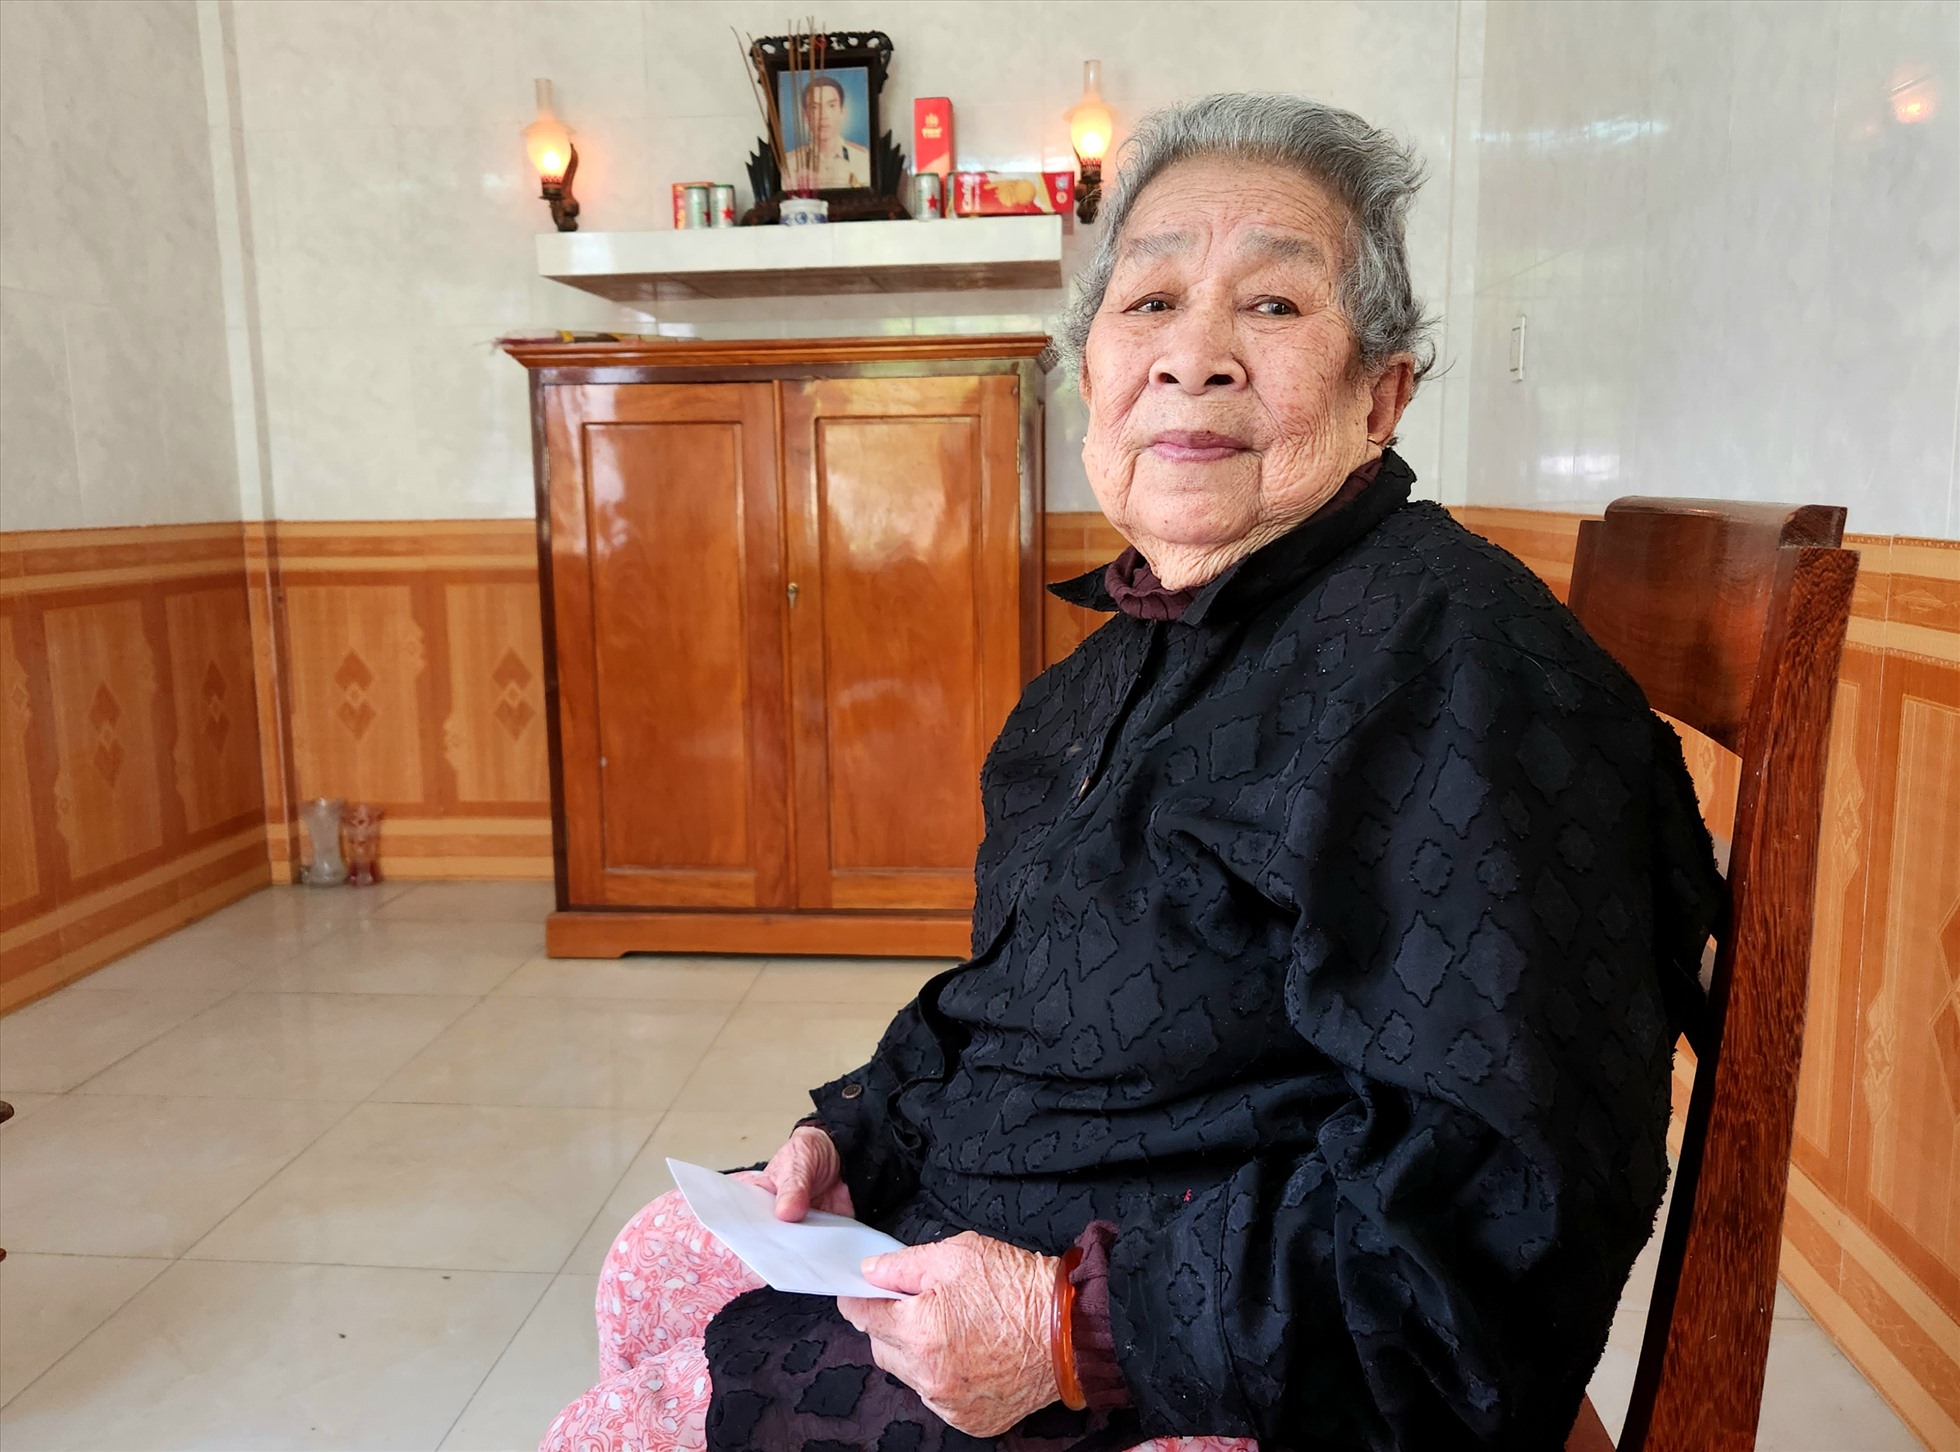 Mẹ Đức xúc động khi hồi tưởng về những câu chuyện về người con liệt sỹ Trần Văn Phương. Ảnh: Lê Phi Long